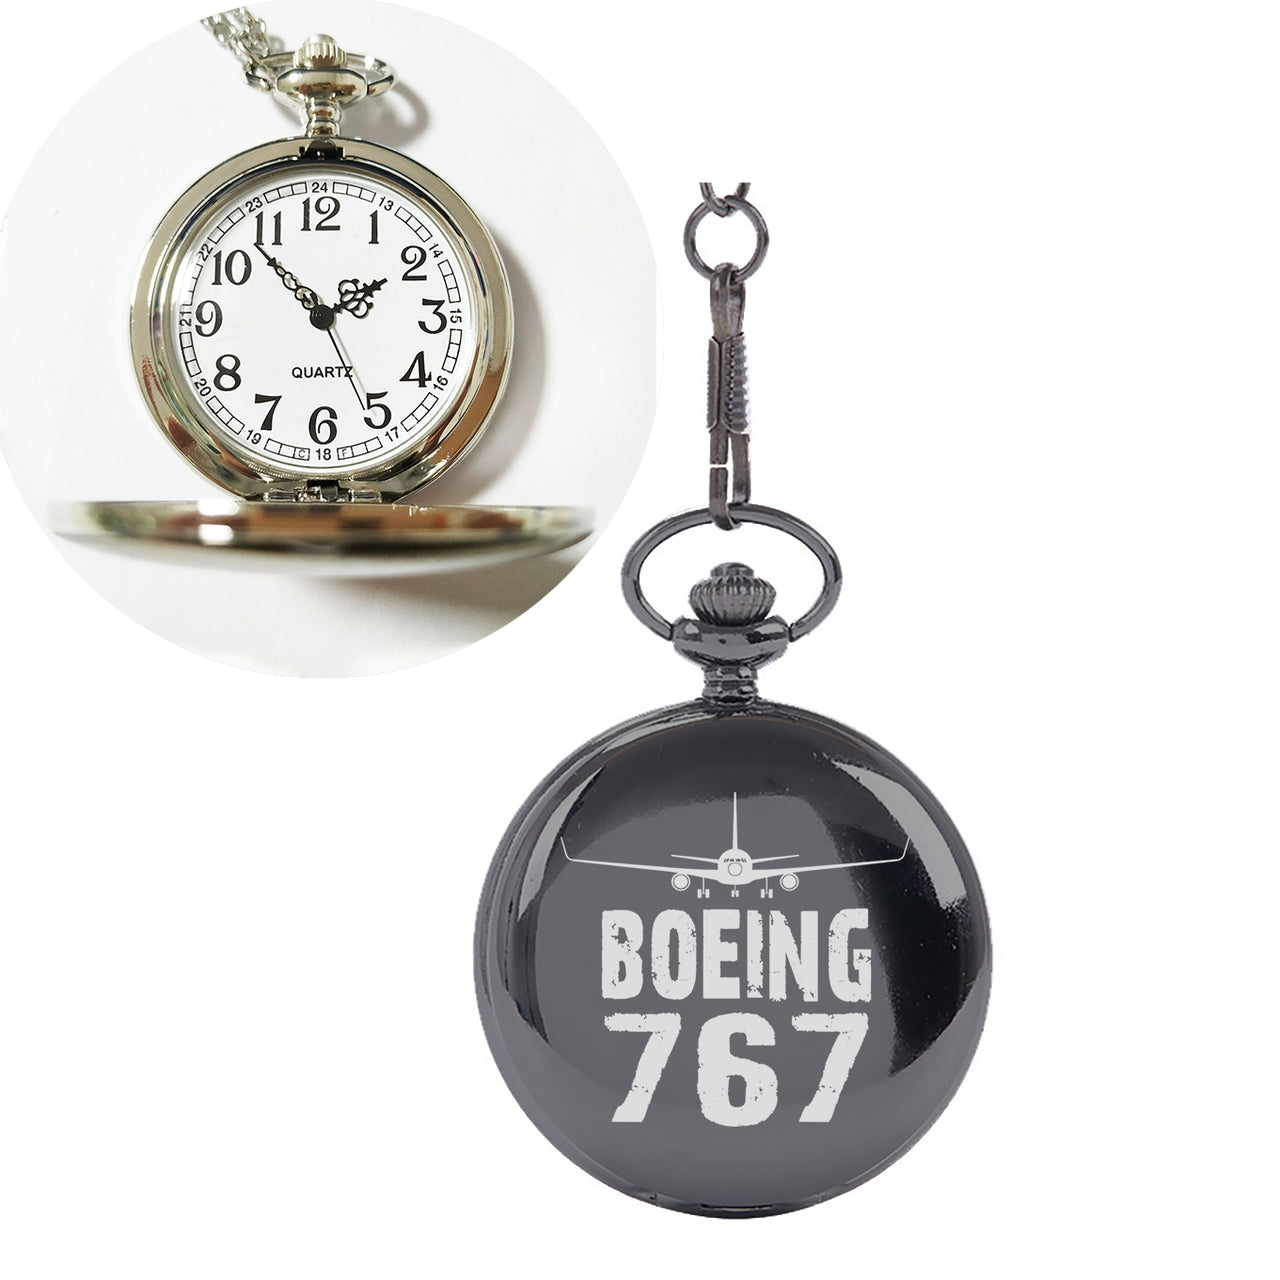 Boeing 767 & Plane Designed Pocket Watches